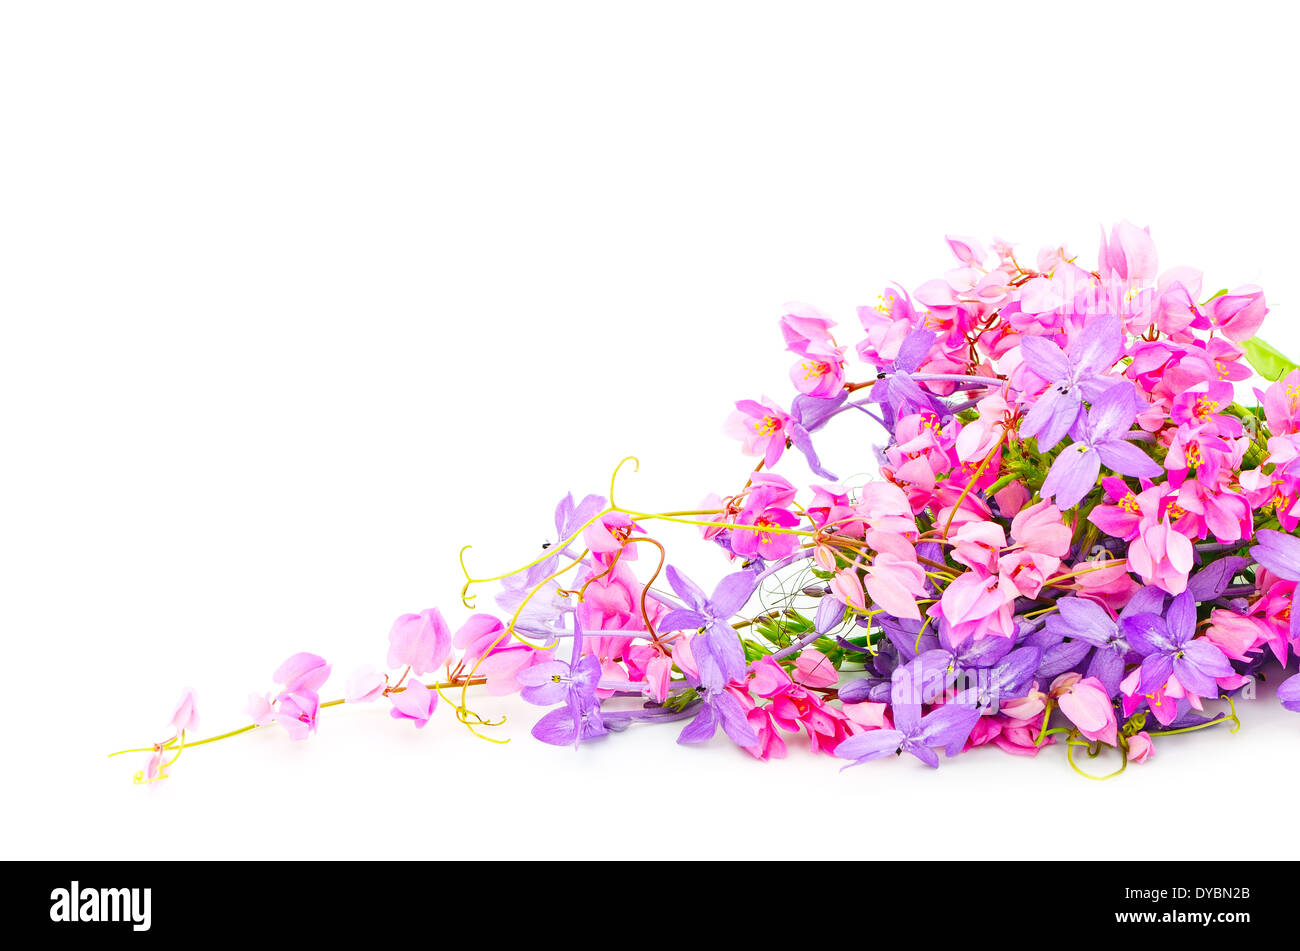 Sommer Blumen Hintergrund, schöne rosa und lila Blume, isoliert auf weißem Hintergrund Stockfoto